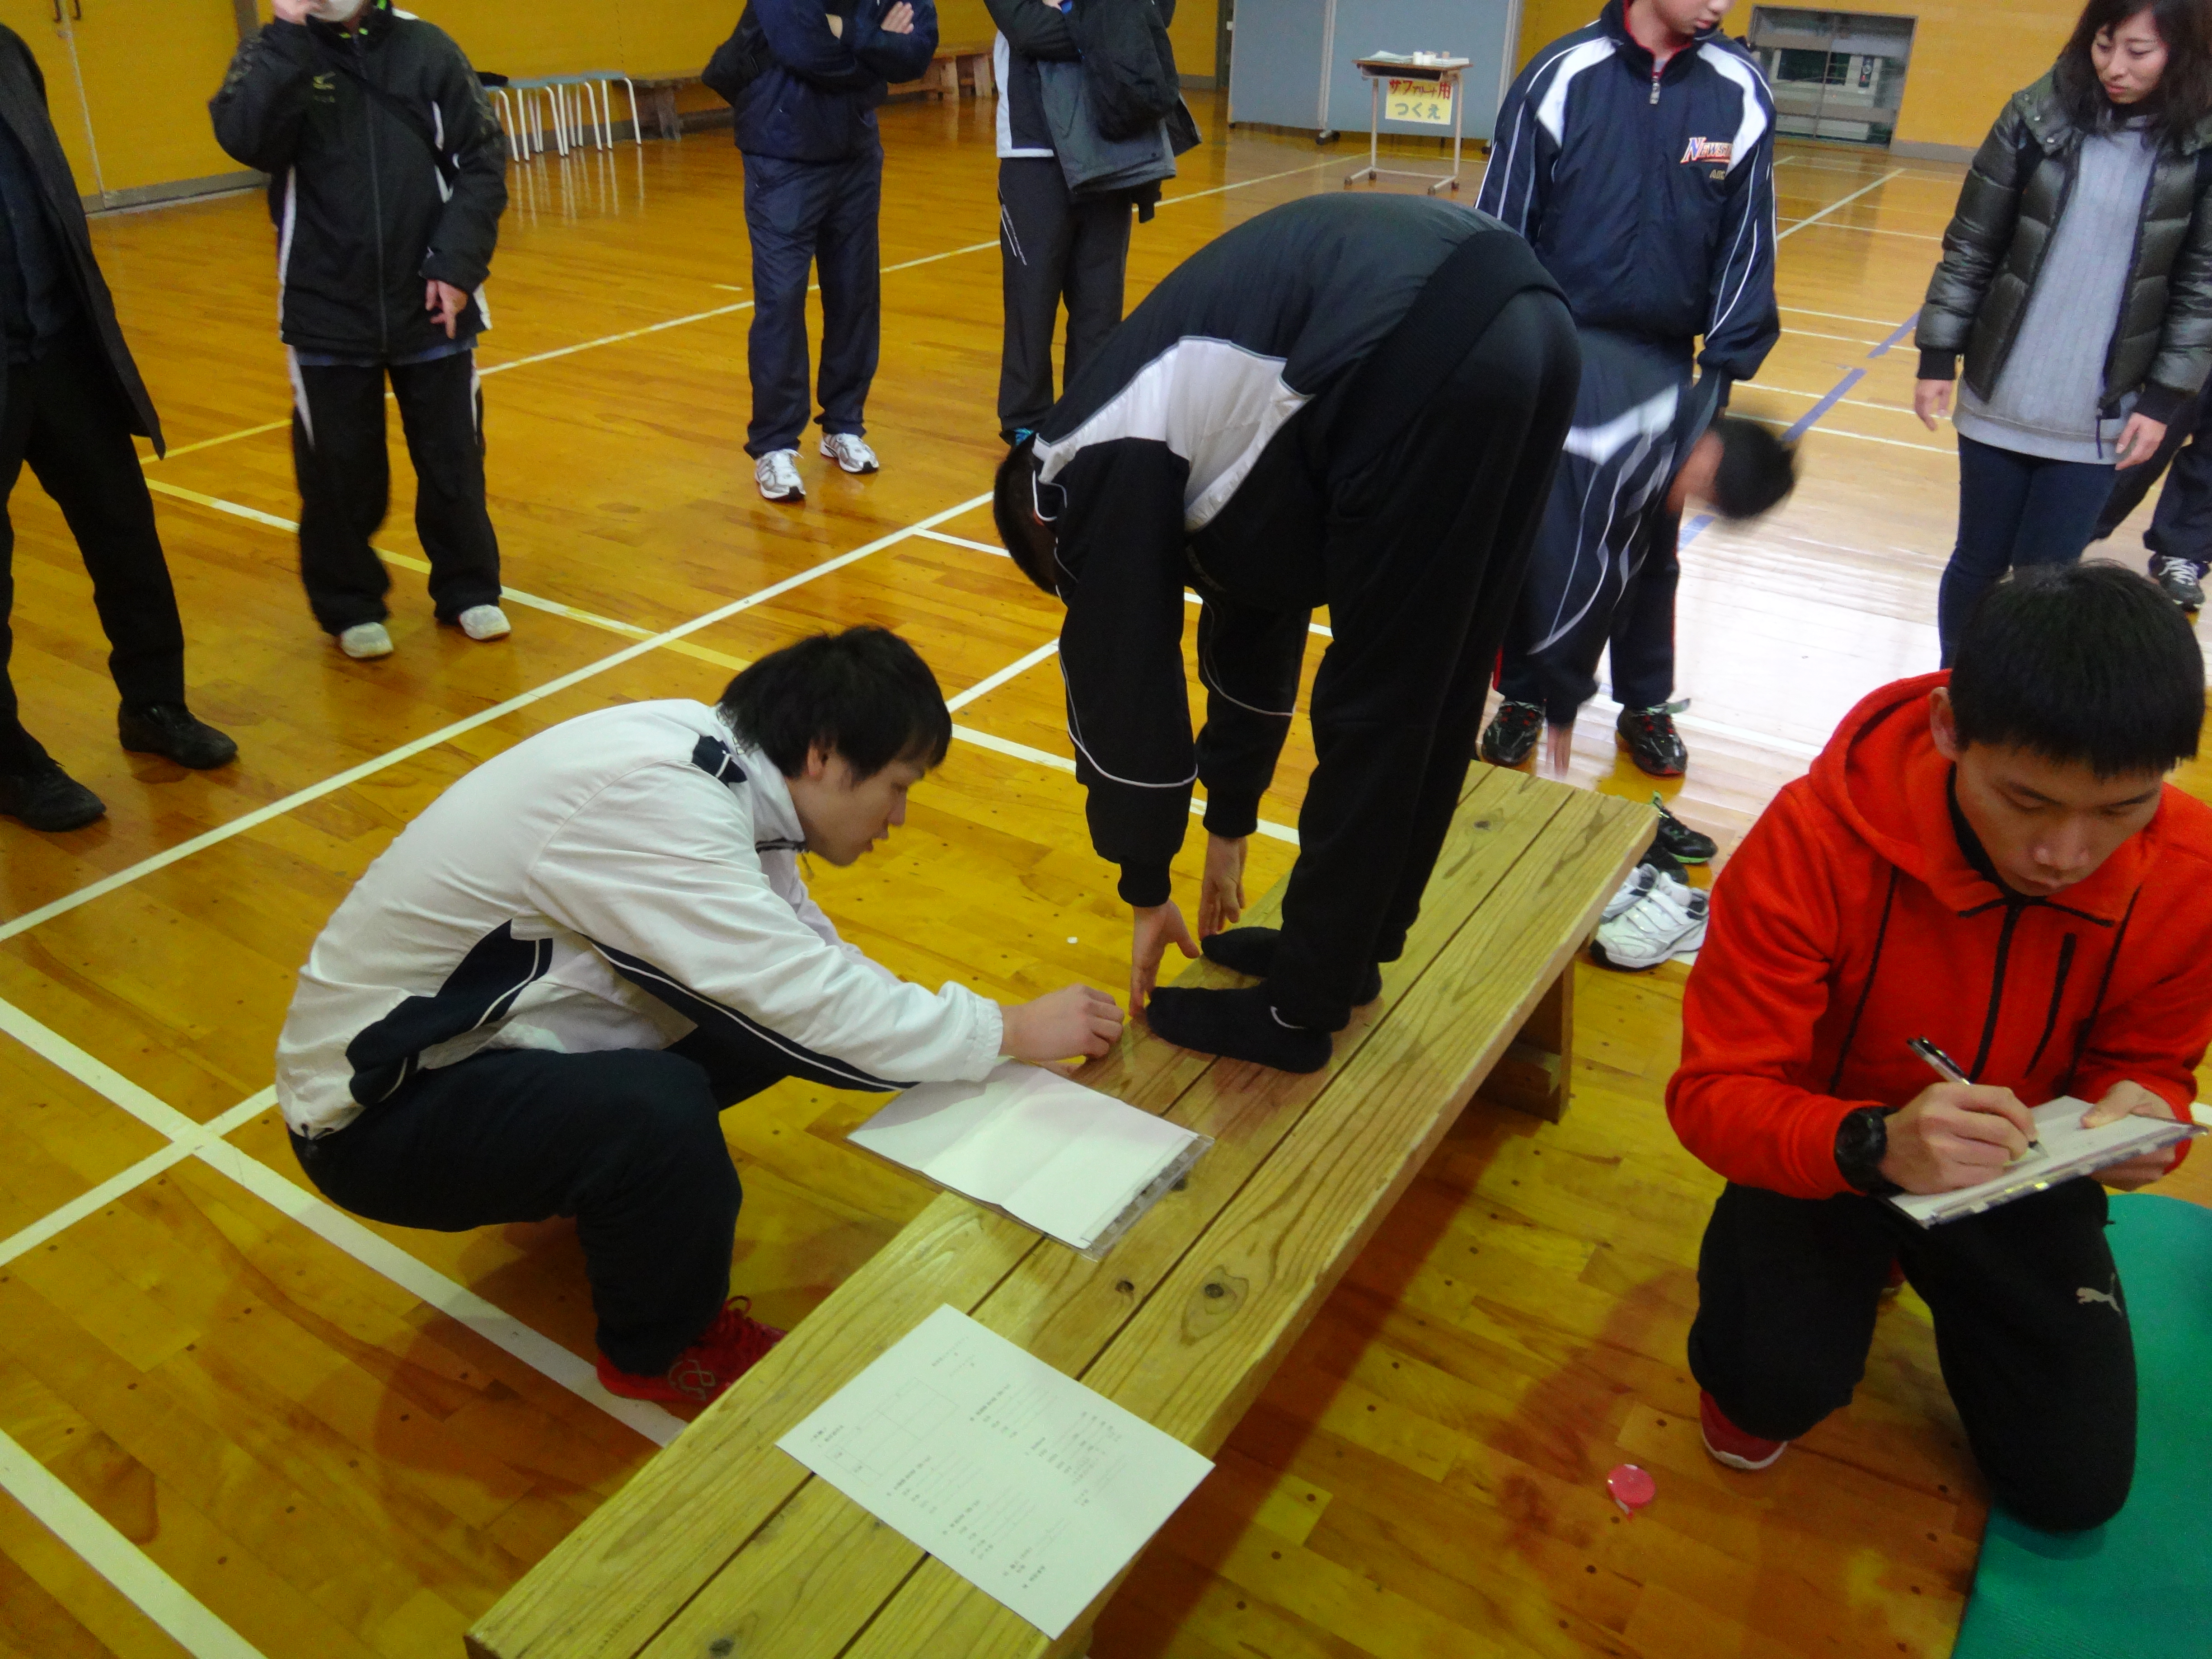 『野球少年向け投球障害予防教室』 in 北秋田を開催